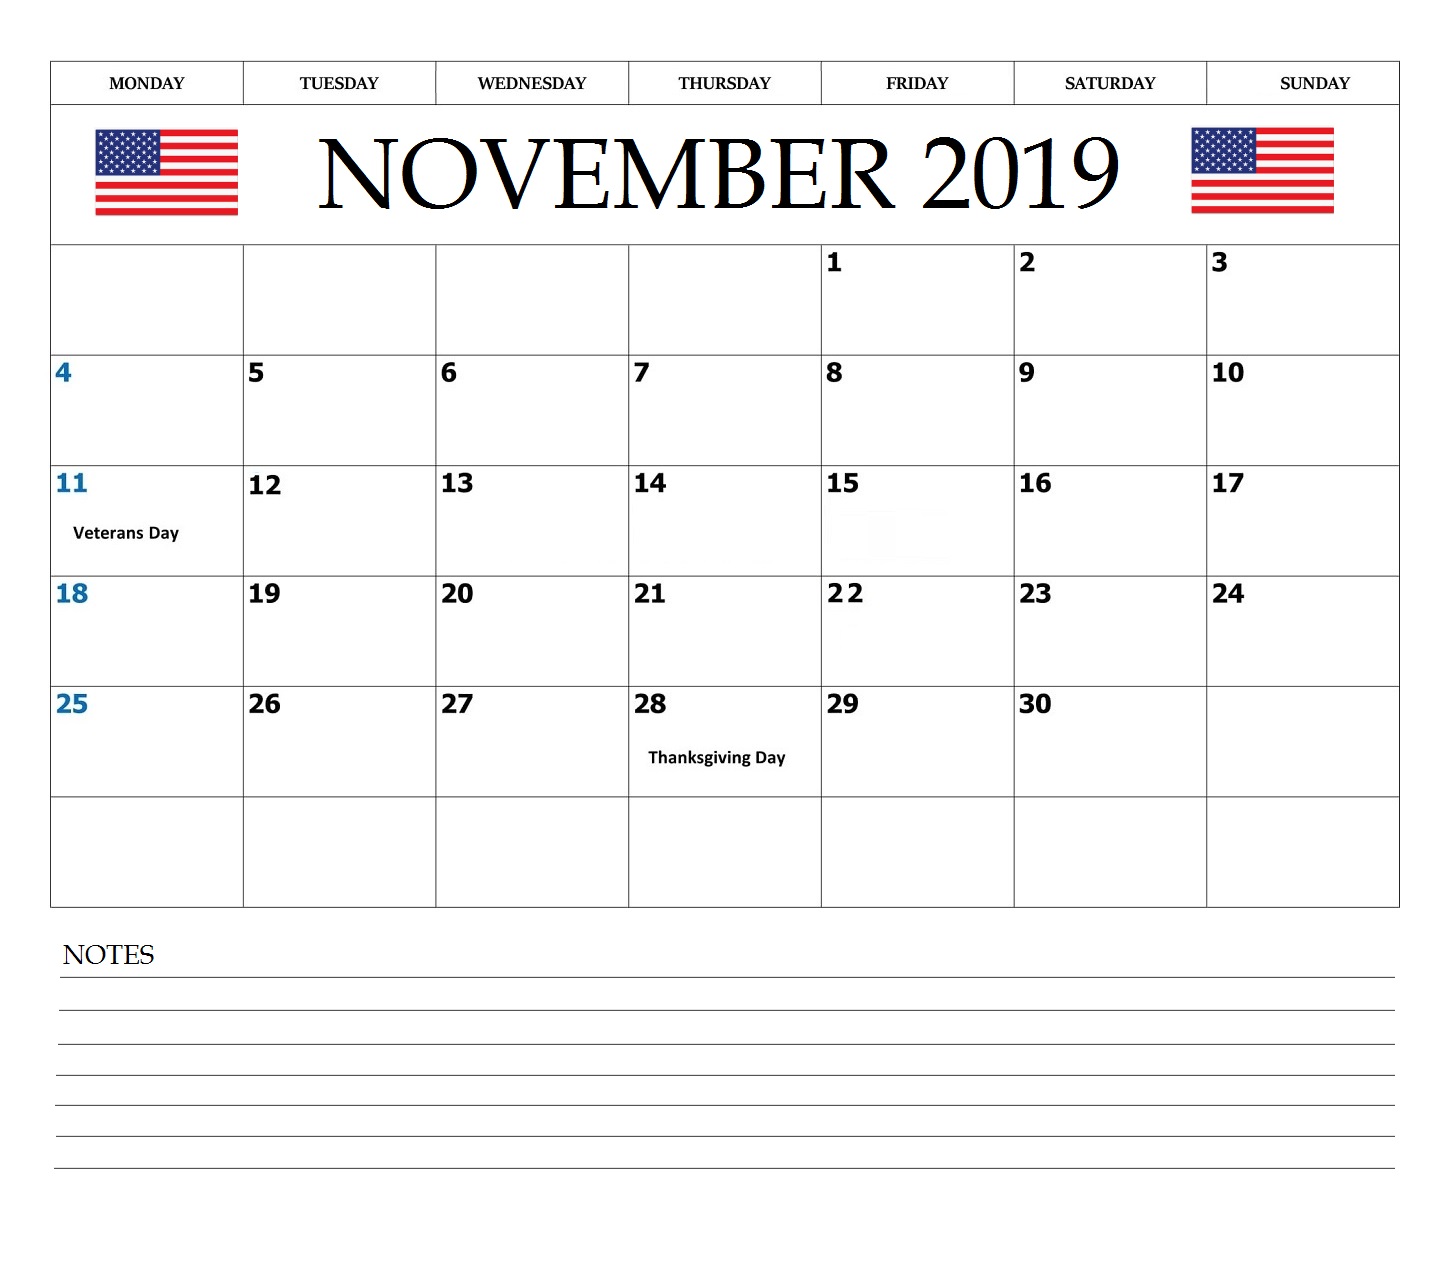 November 2019 USA Federal Holidays Calendar